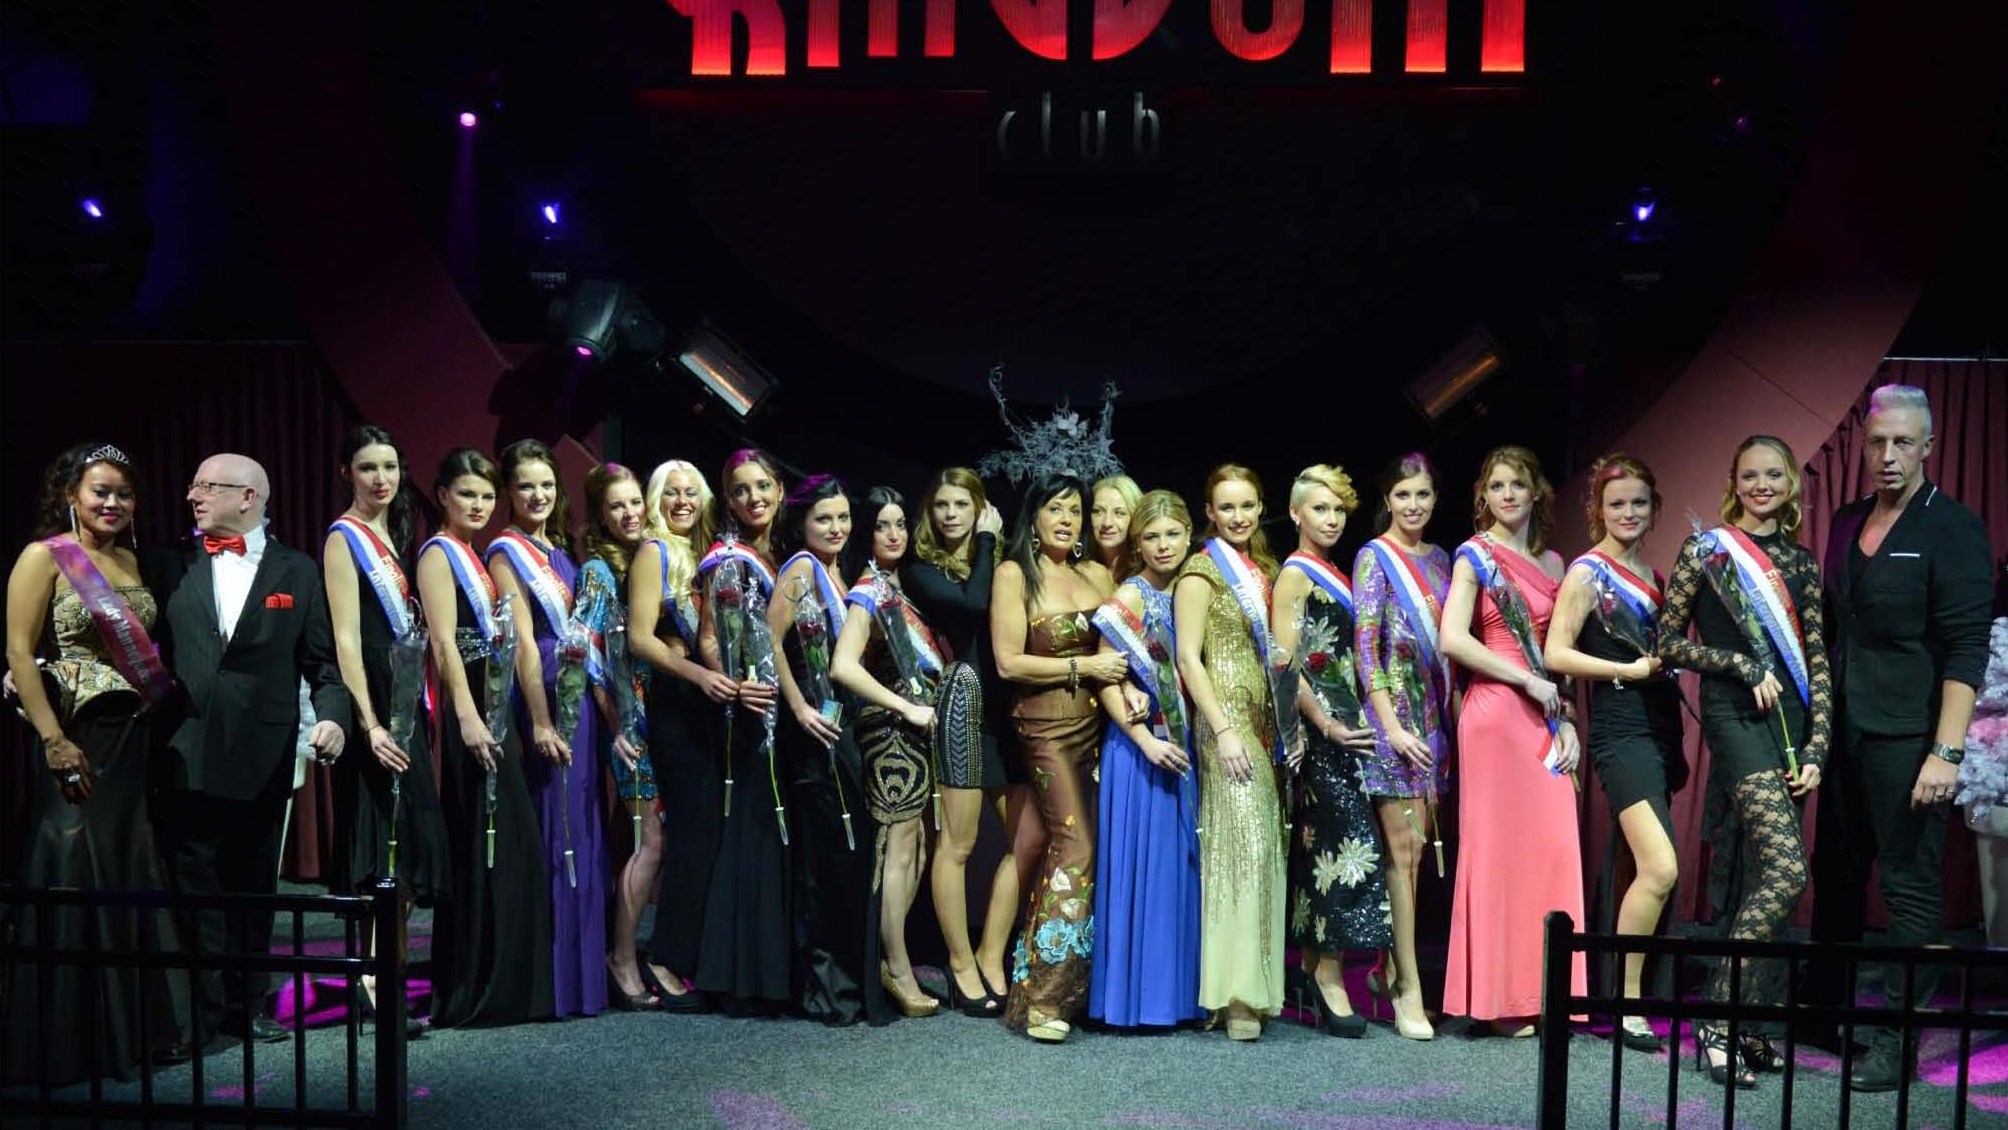 Halve finale Miss Limburg International Verkiezing 2015